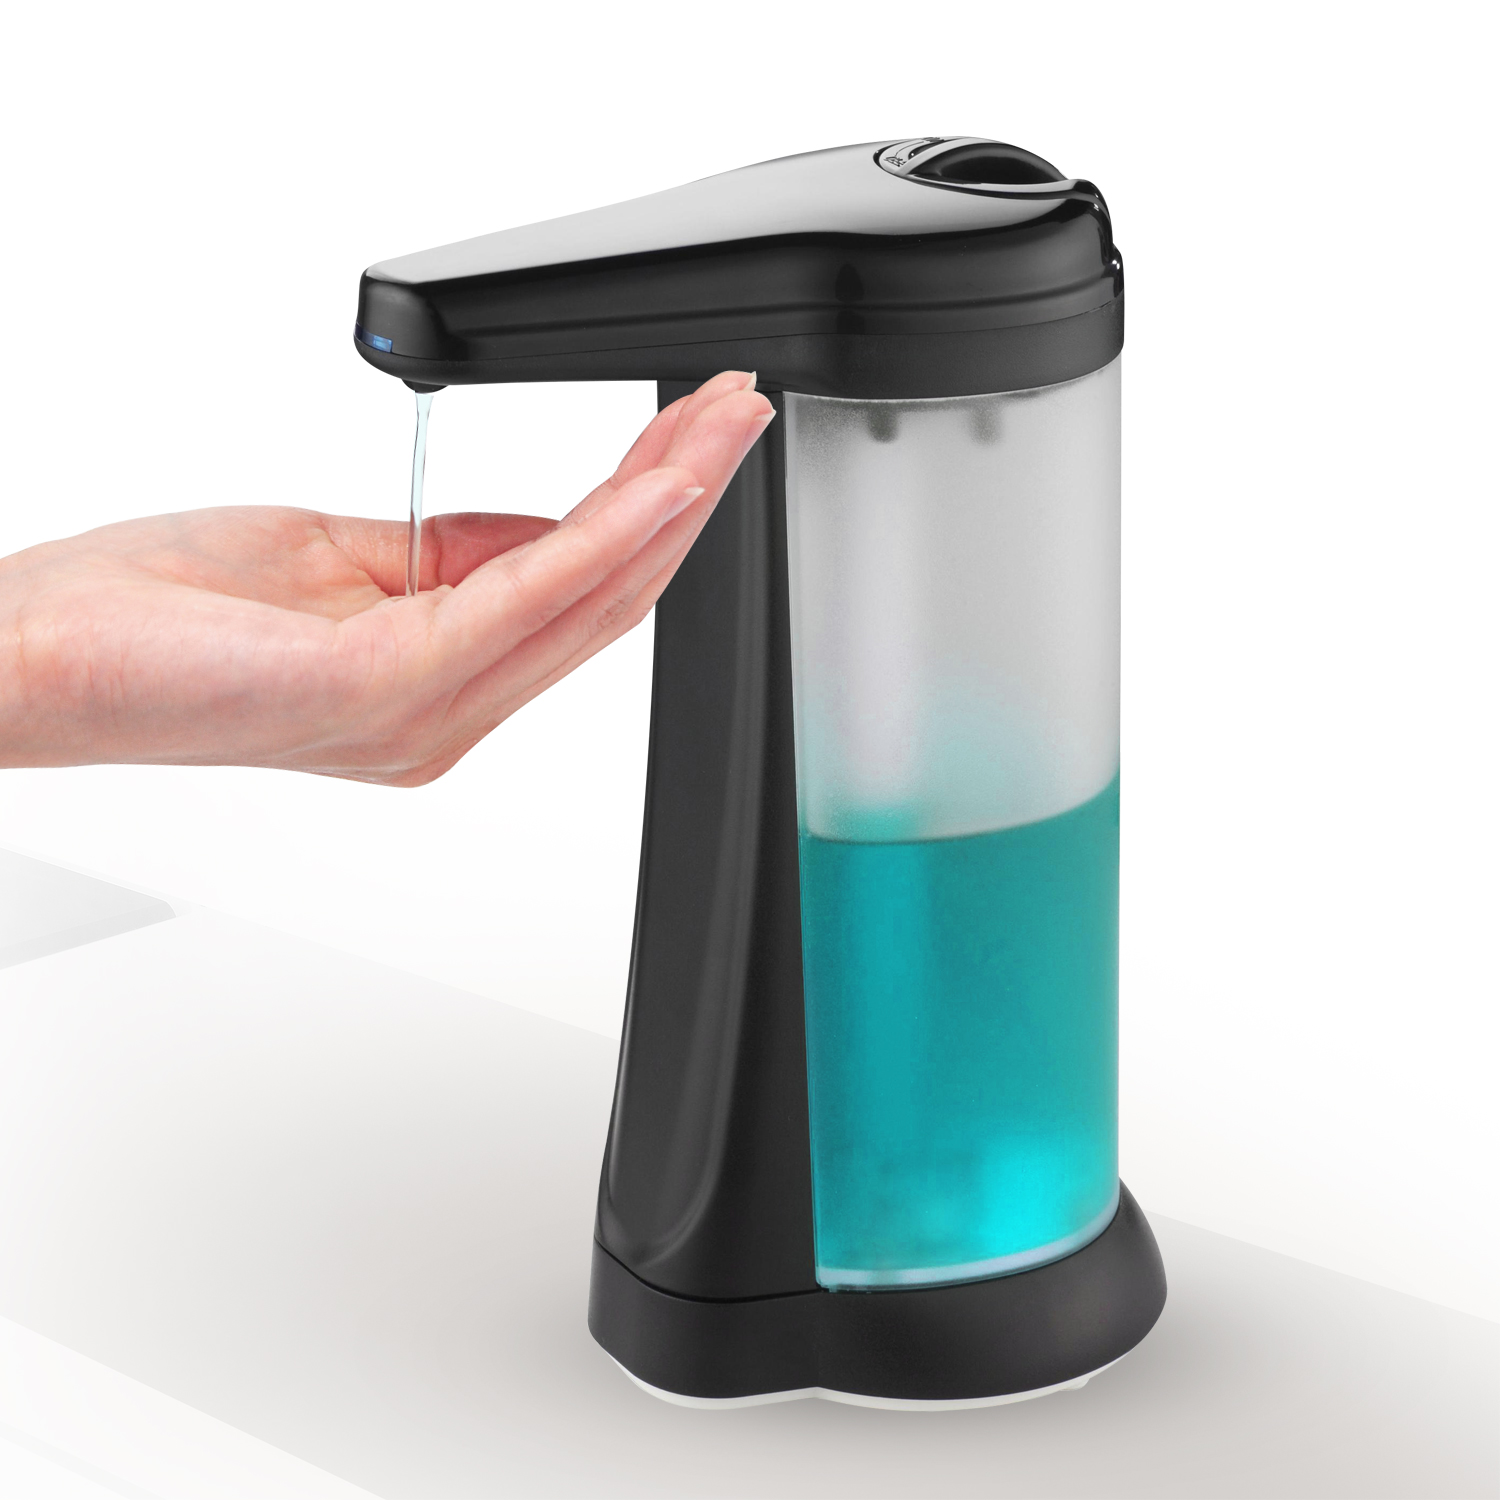 Tabletop Touchless Hand Soap Dispenser Home V-472 